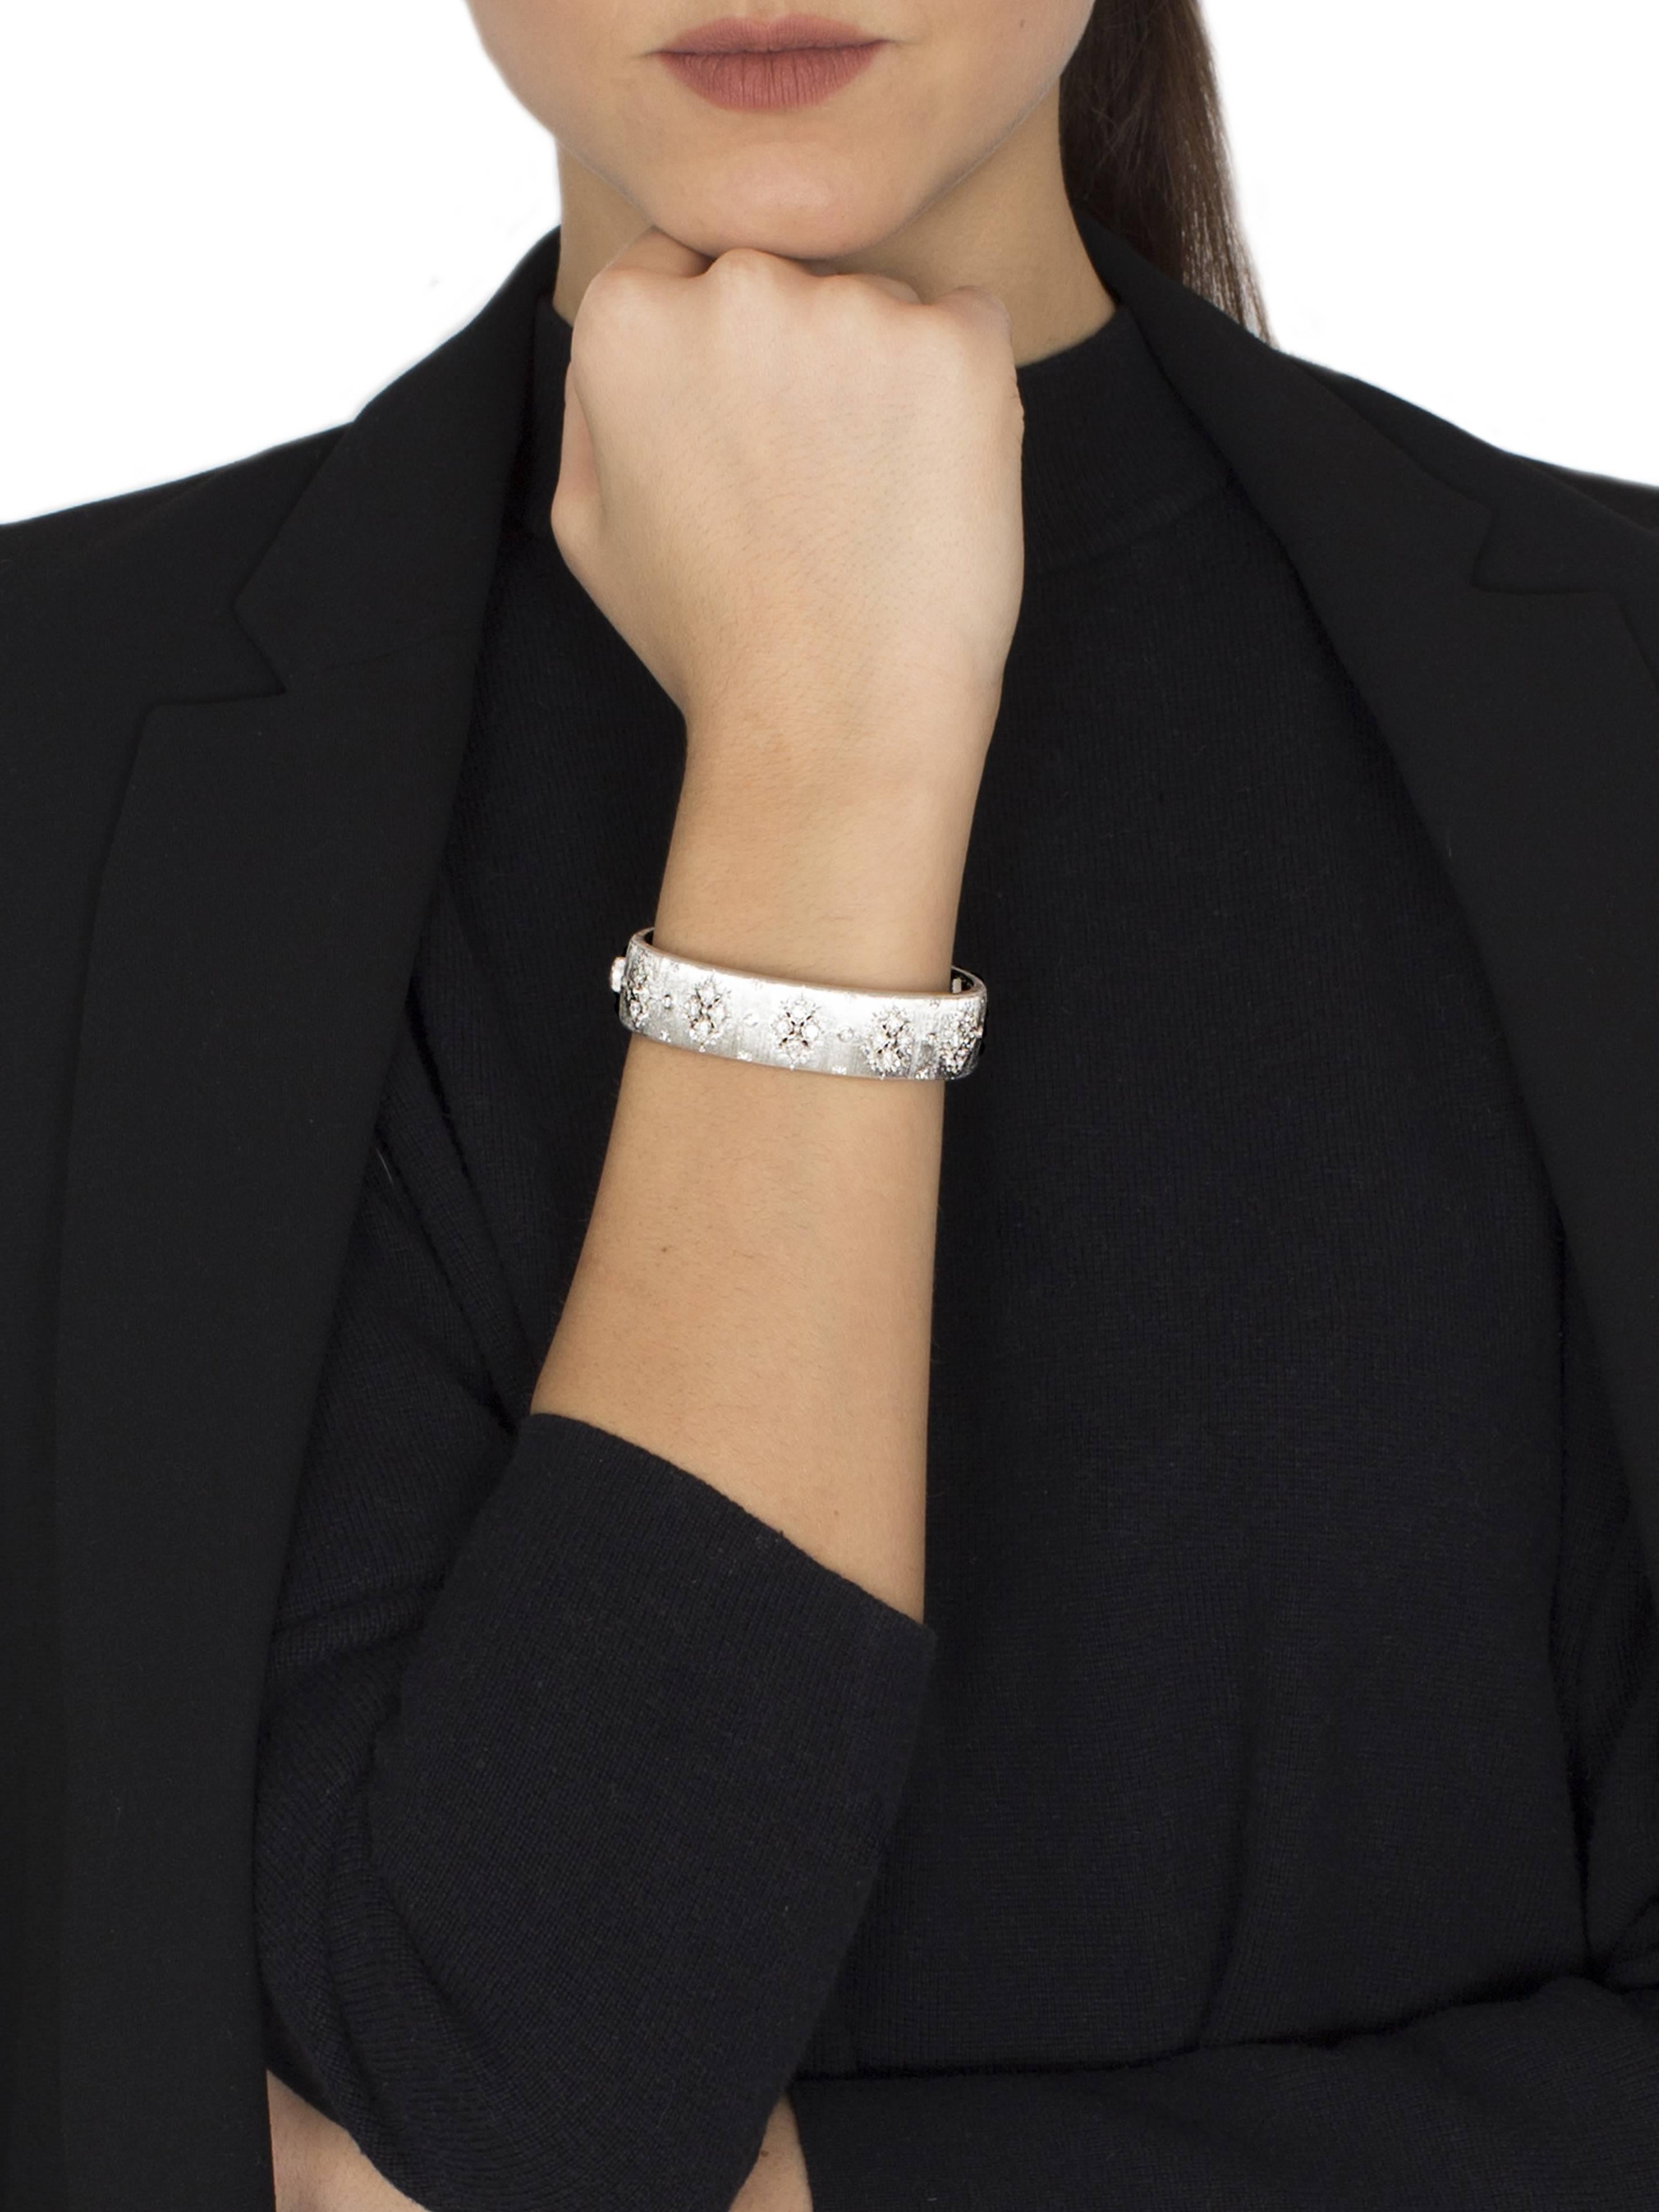 Diamond White Gold Cuff Bracelet by Opera, Italian Attitude In New Condition For Sale In Milano, IT